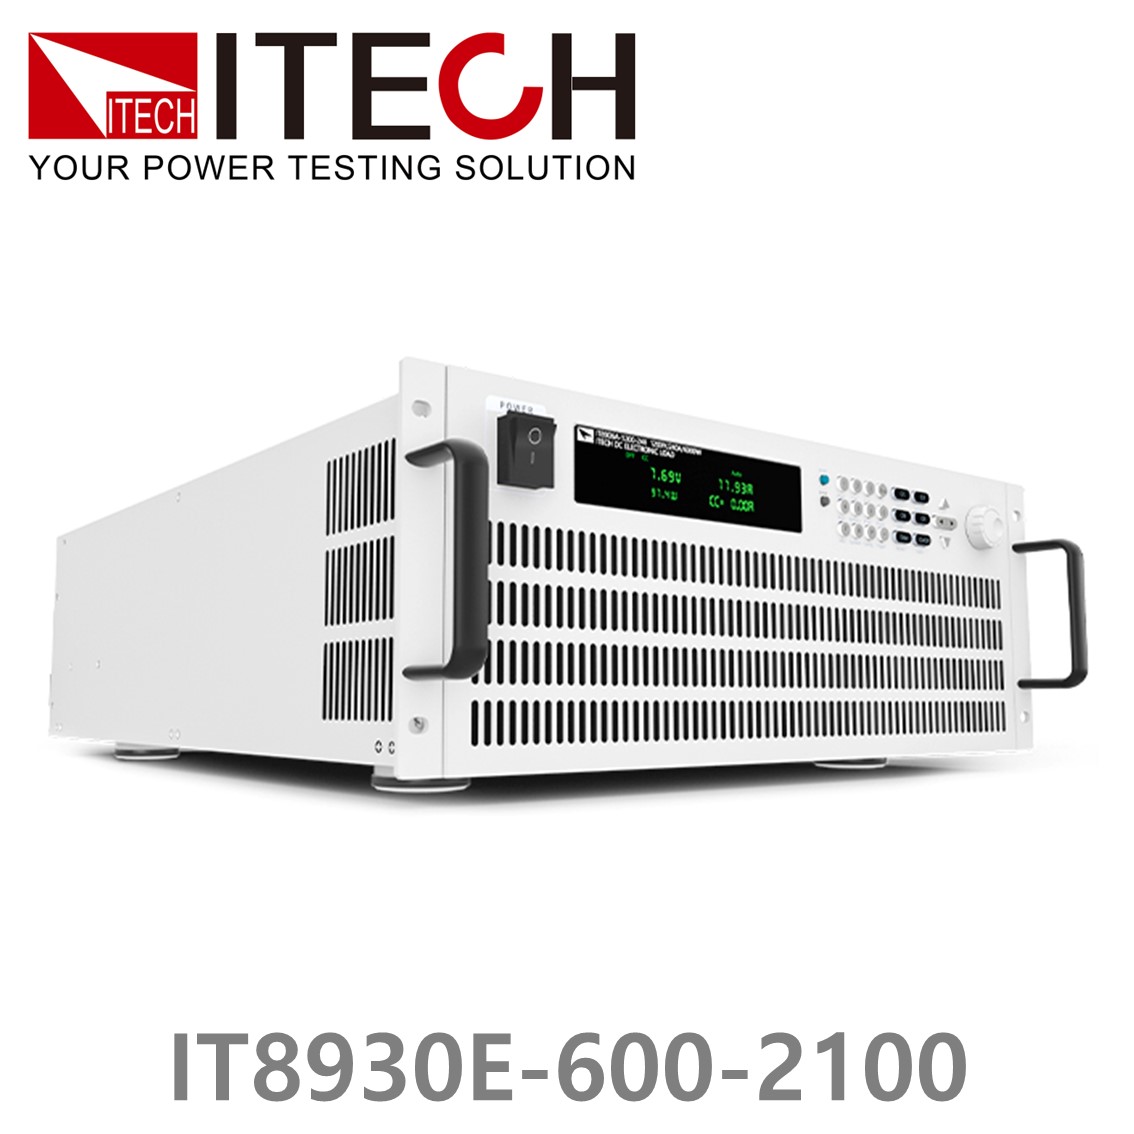 [ ITECH ] IT8930E-600-2100  고성능 고전력 DC 전자로드 600V/2100A/30kW (27U)